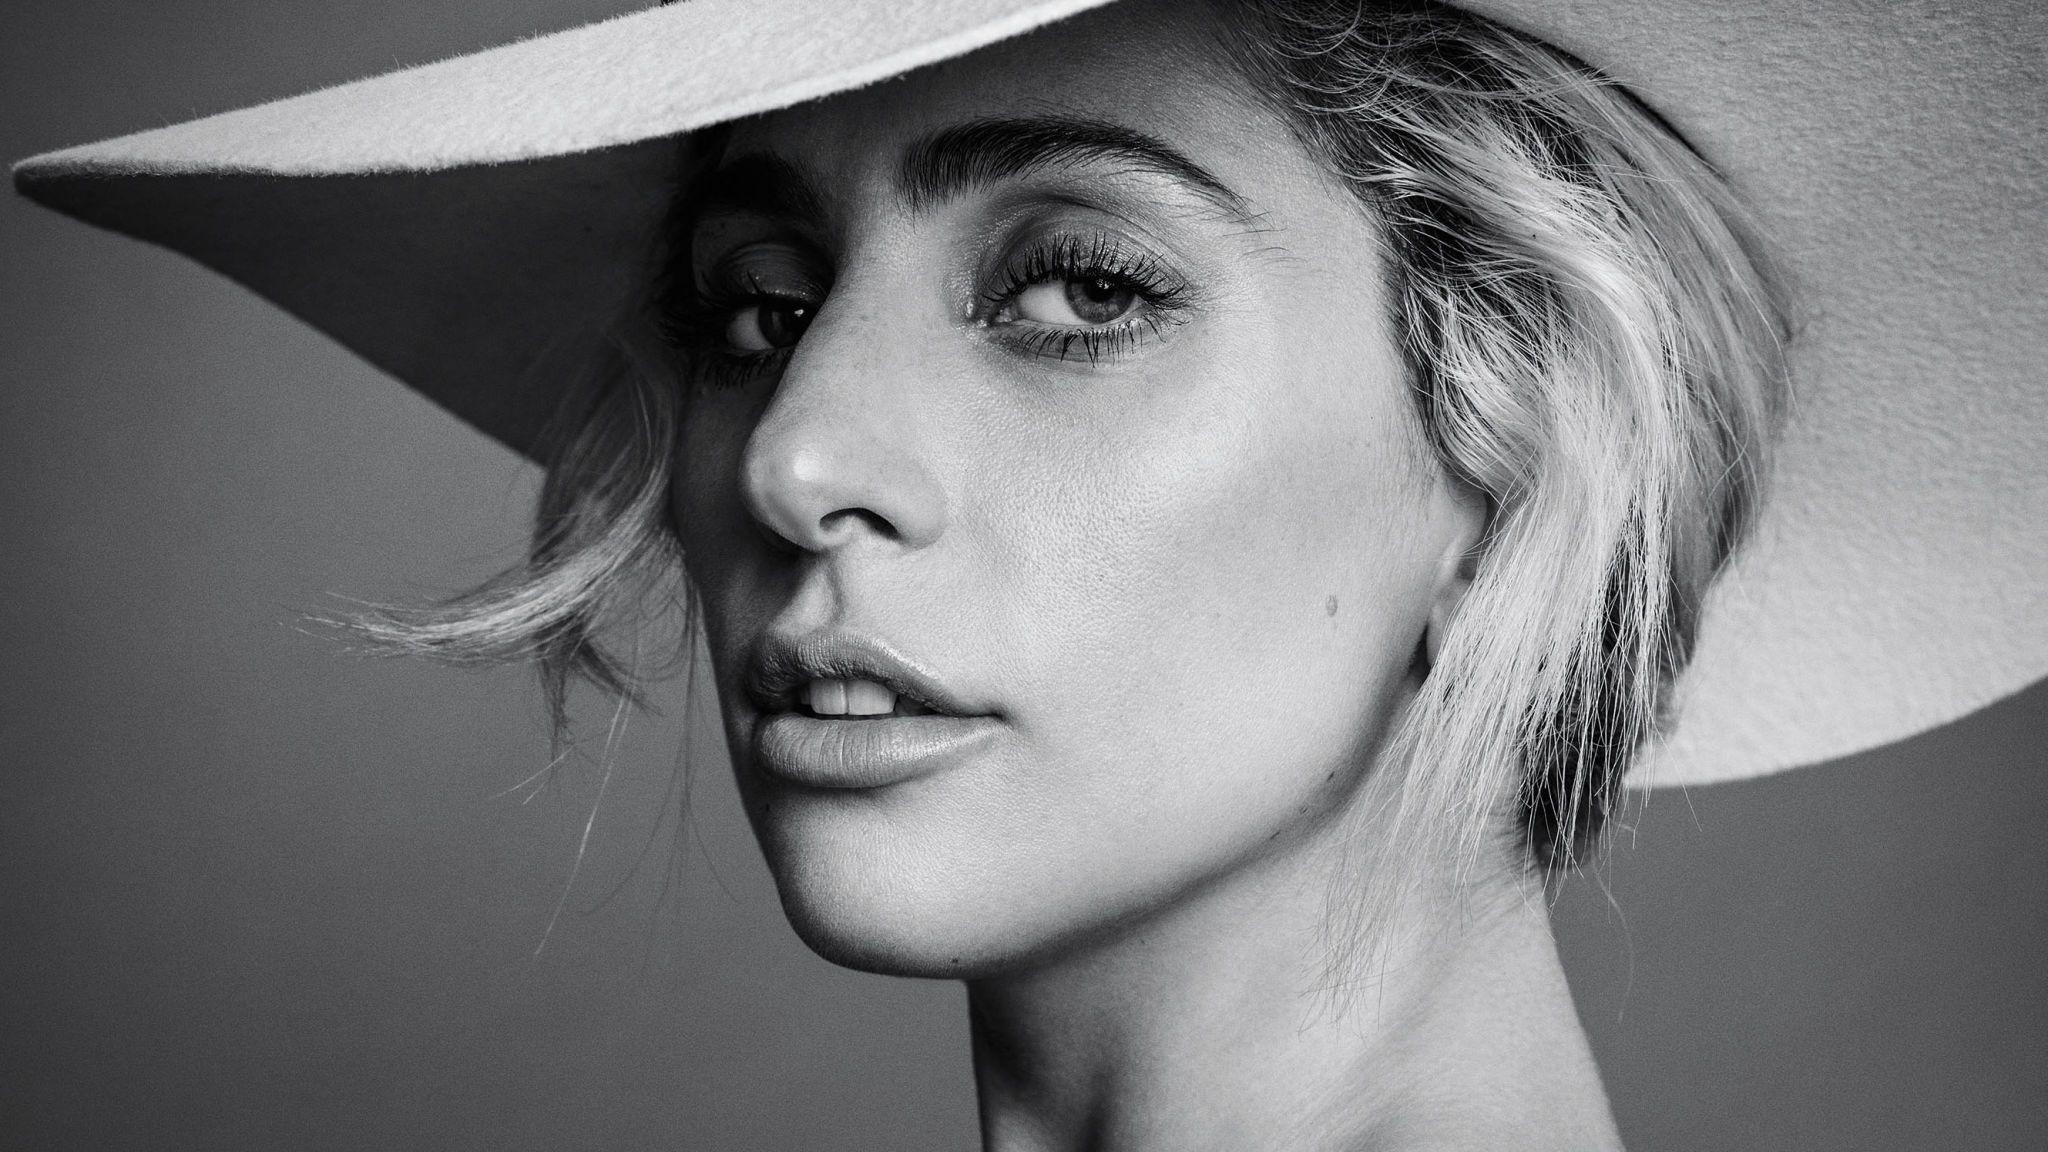 Joanne Lady Gaga Wallpapers - Top Free